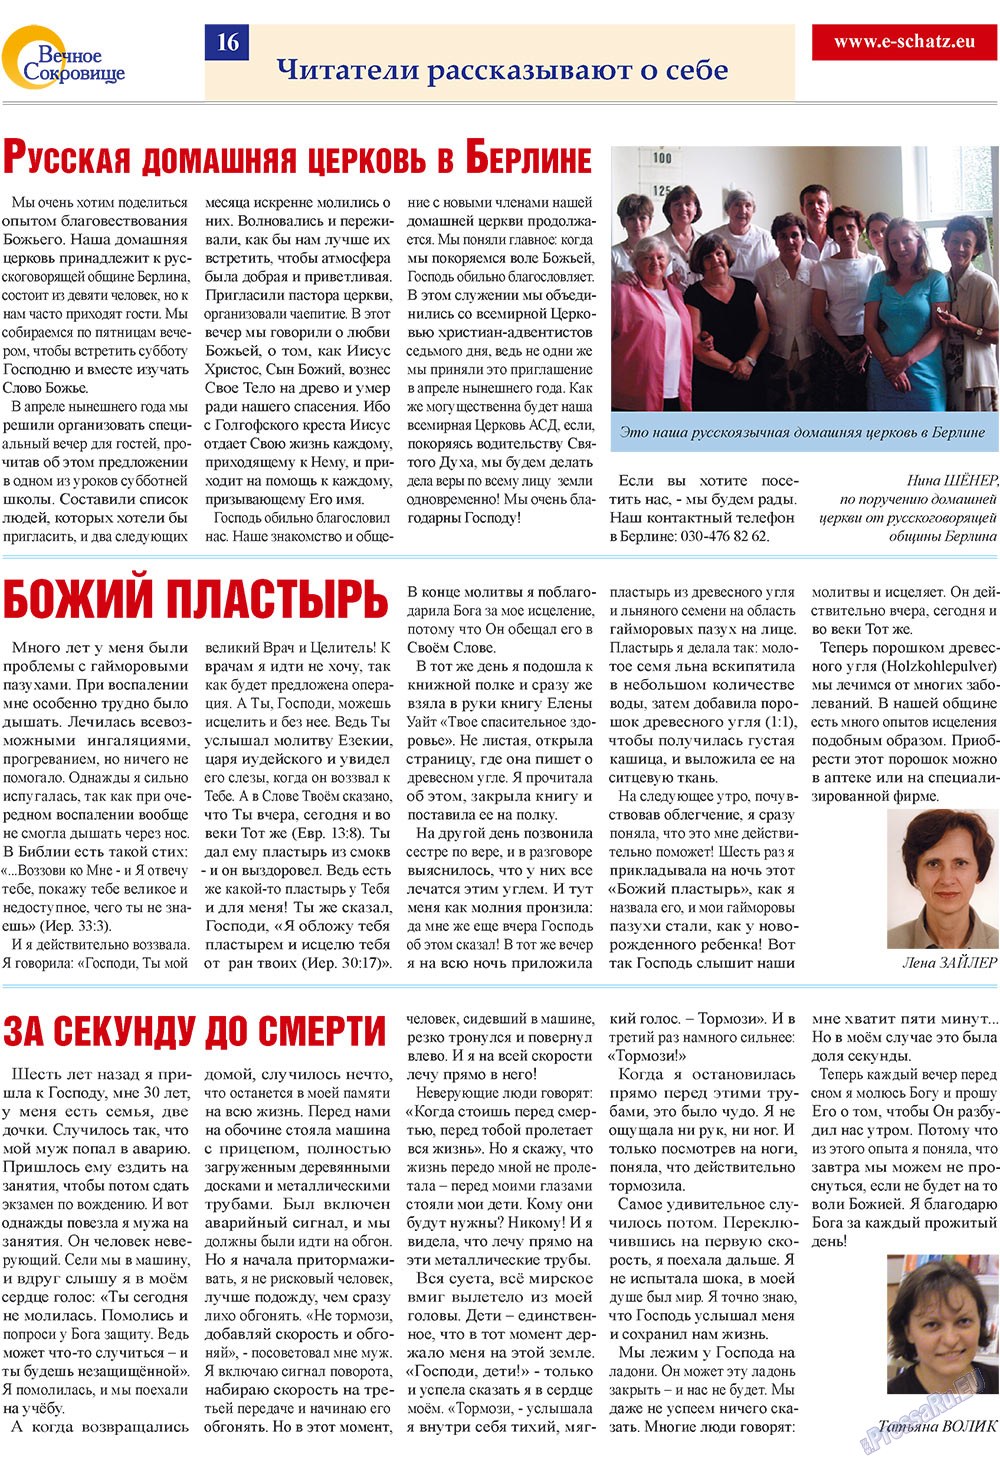 Вечное сокровище, газета. 2009 №3 стр.16